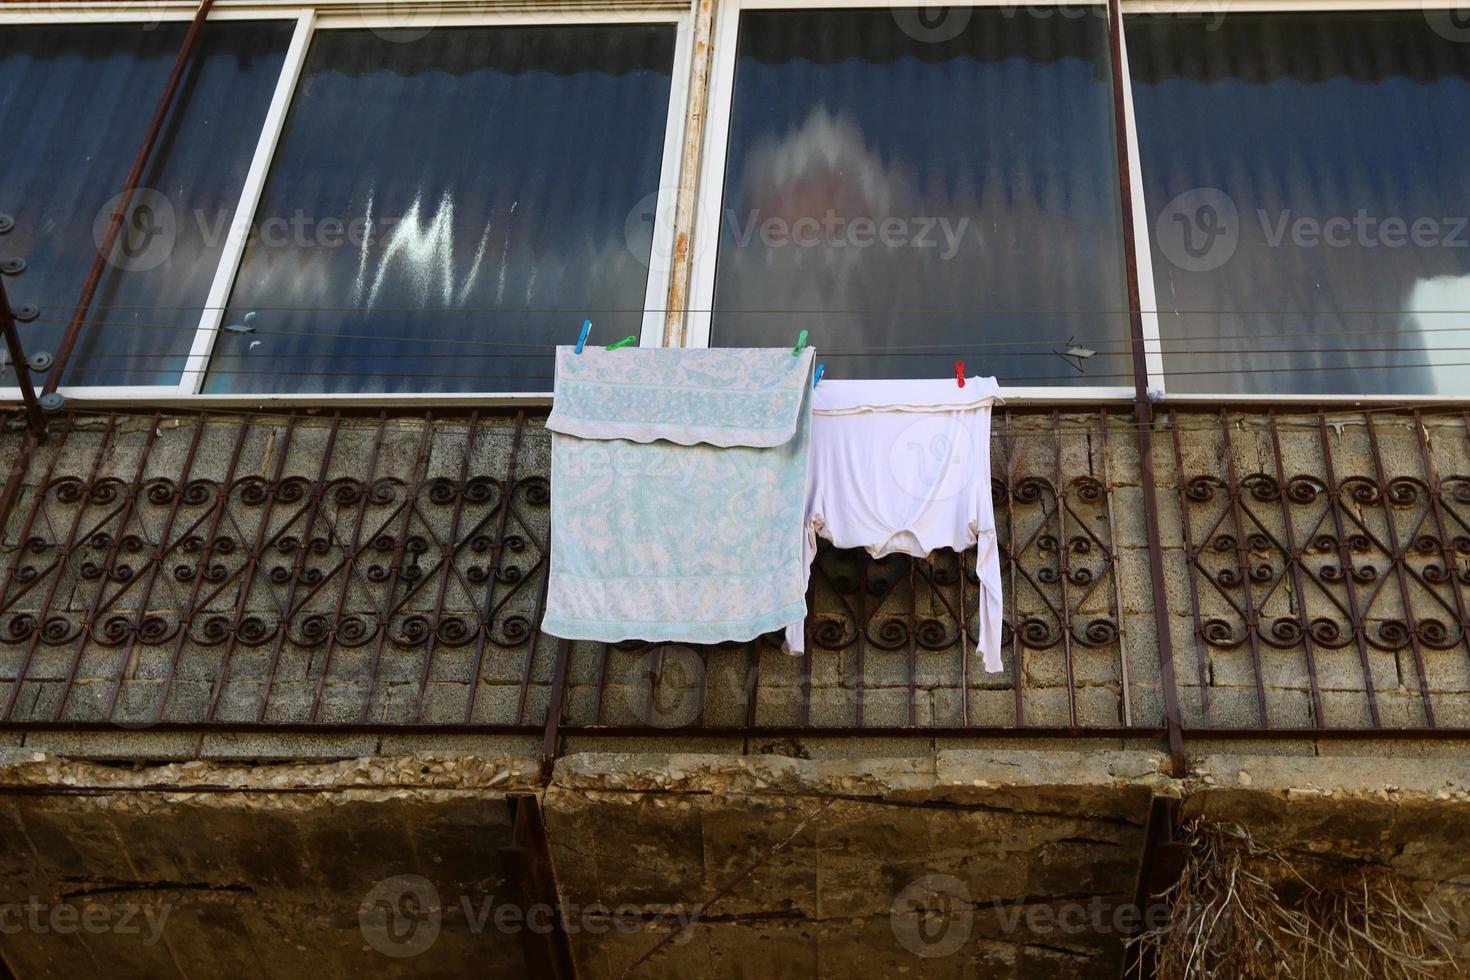 gewassen kleren en linnen droogt Aan de balkon. foto